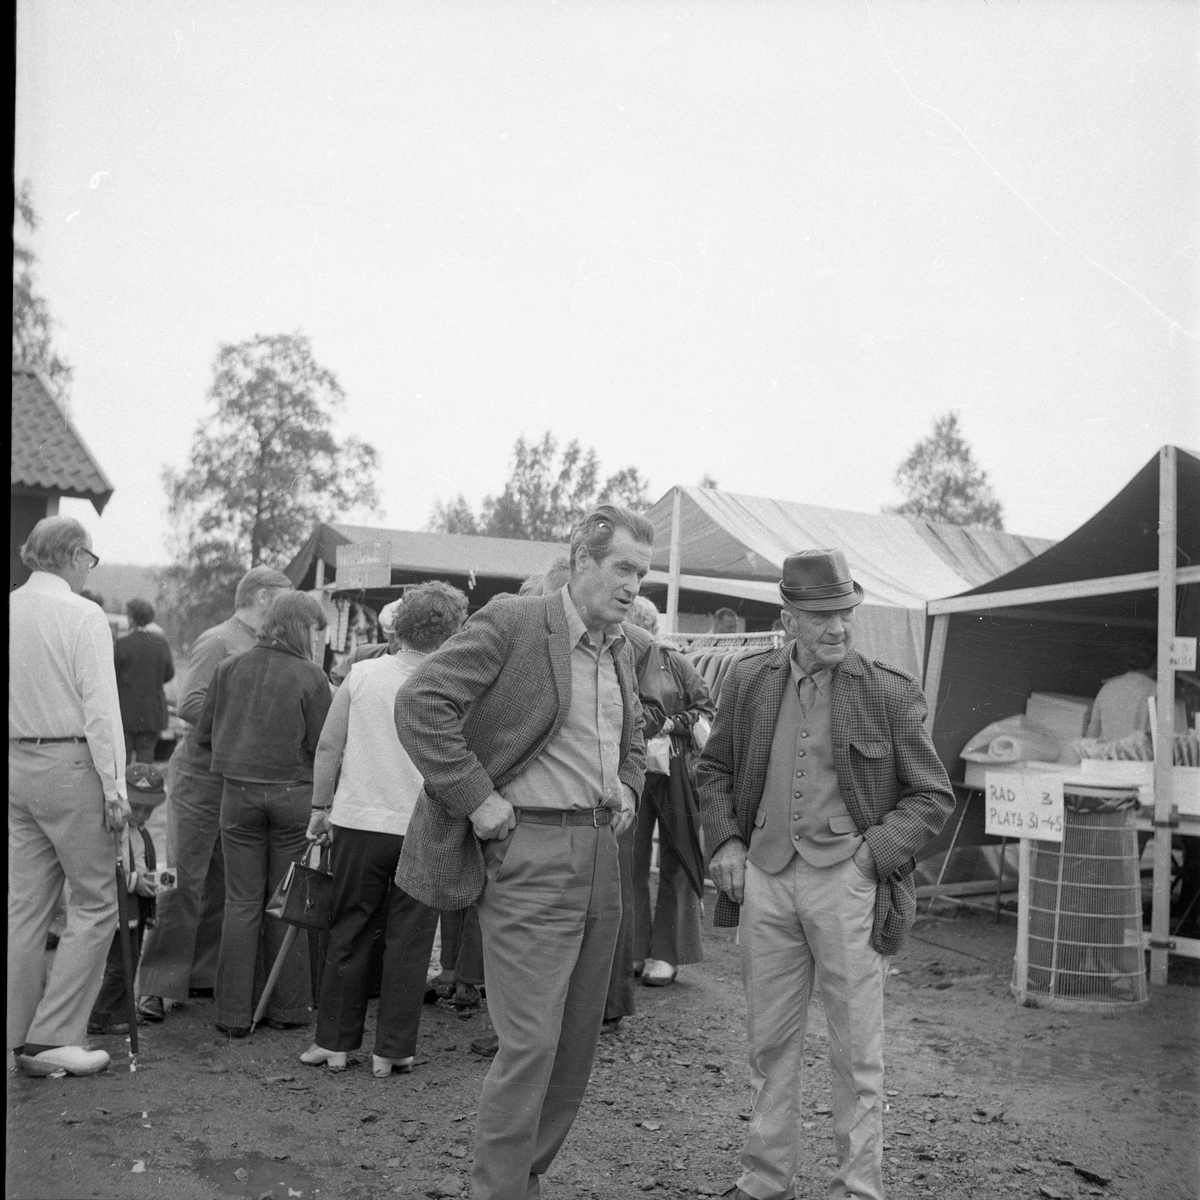 Folksamling på ett marknadsområde, två män i förgrunden.